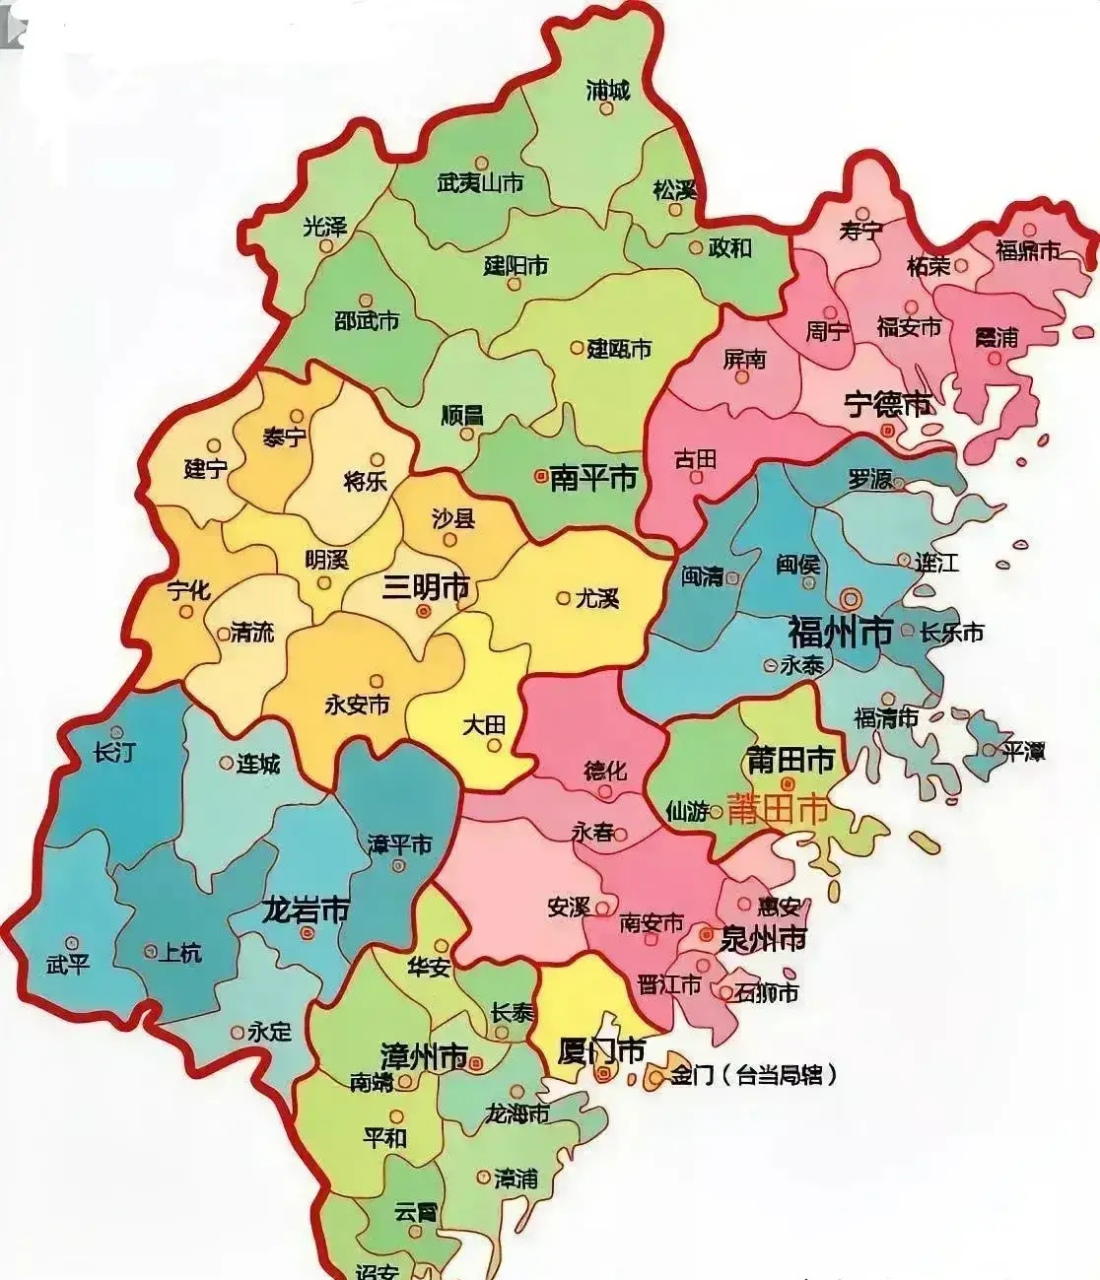 福建省行政区划一览表图片